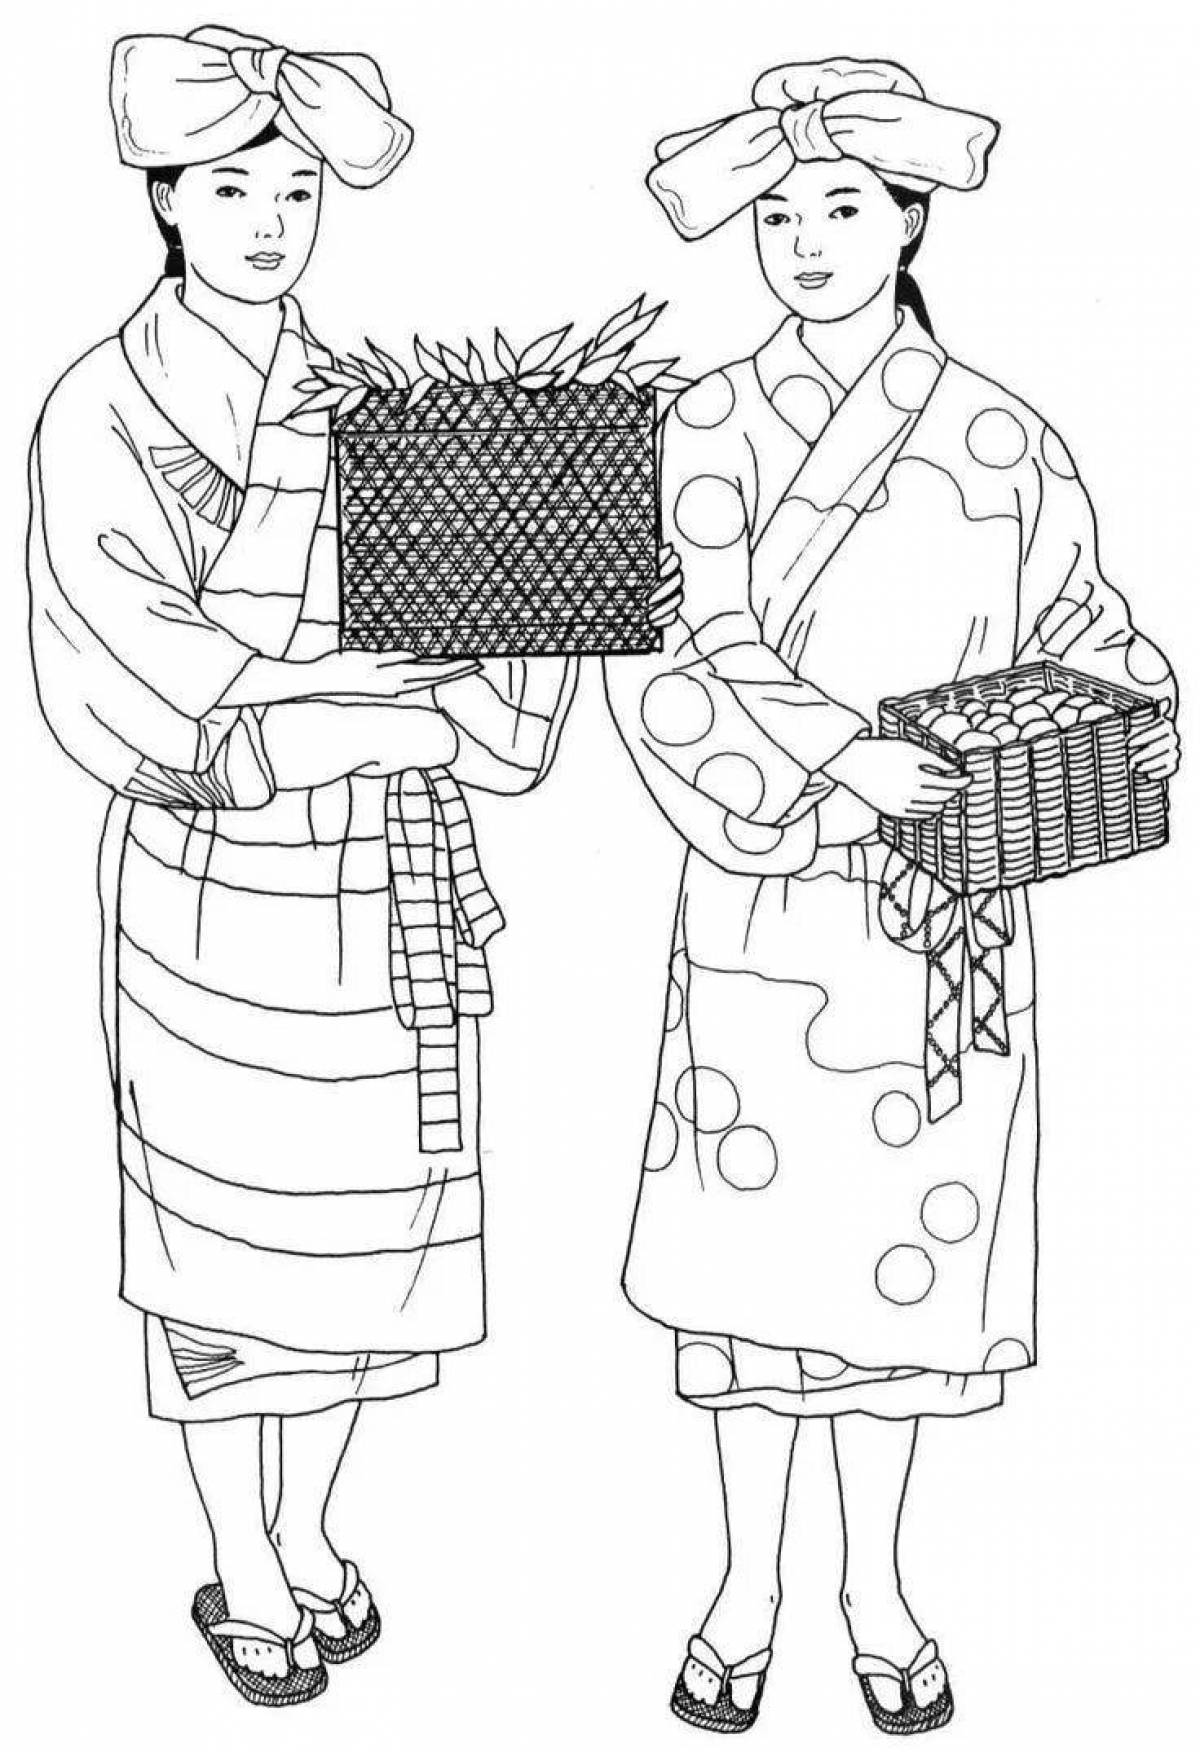 Замысловатая раскраска японского кимоно